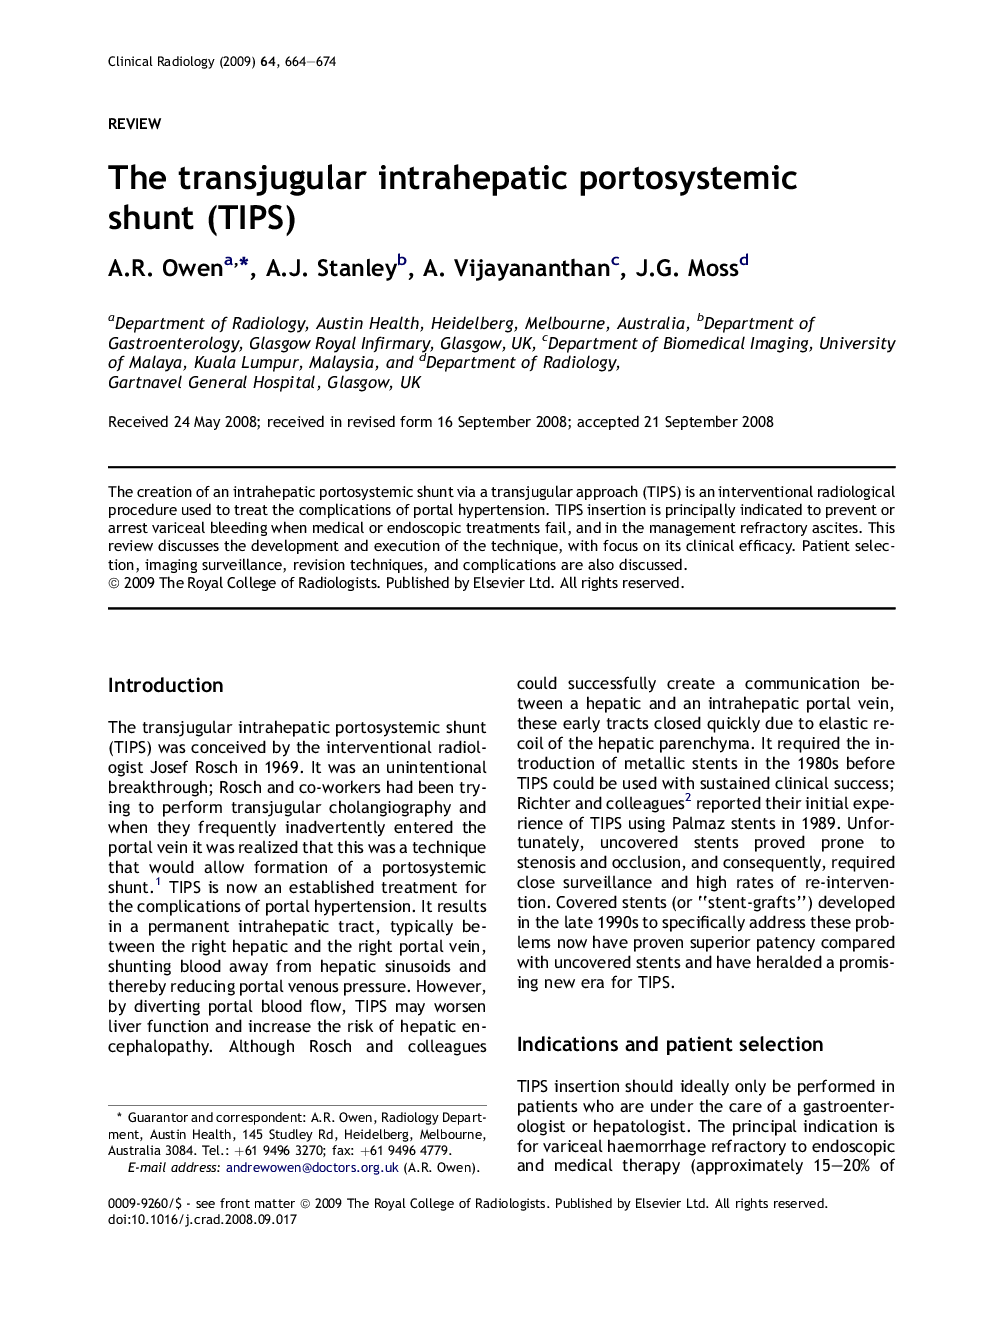 The transjugular intrahepatic portosystemic shunt (TIPS)